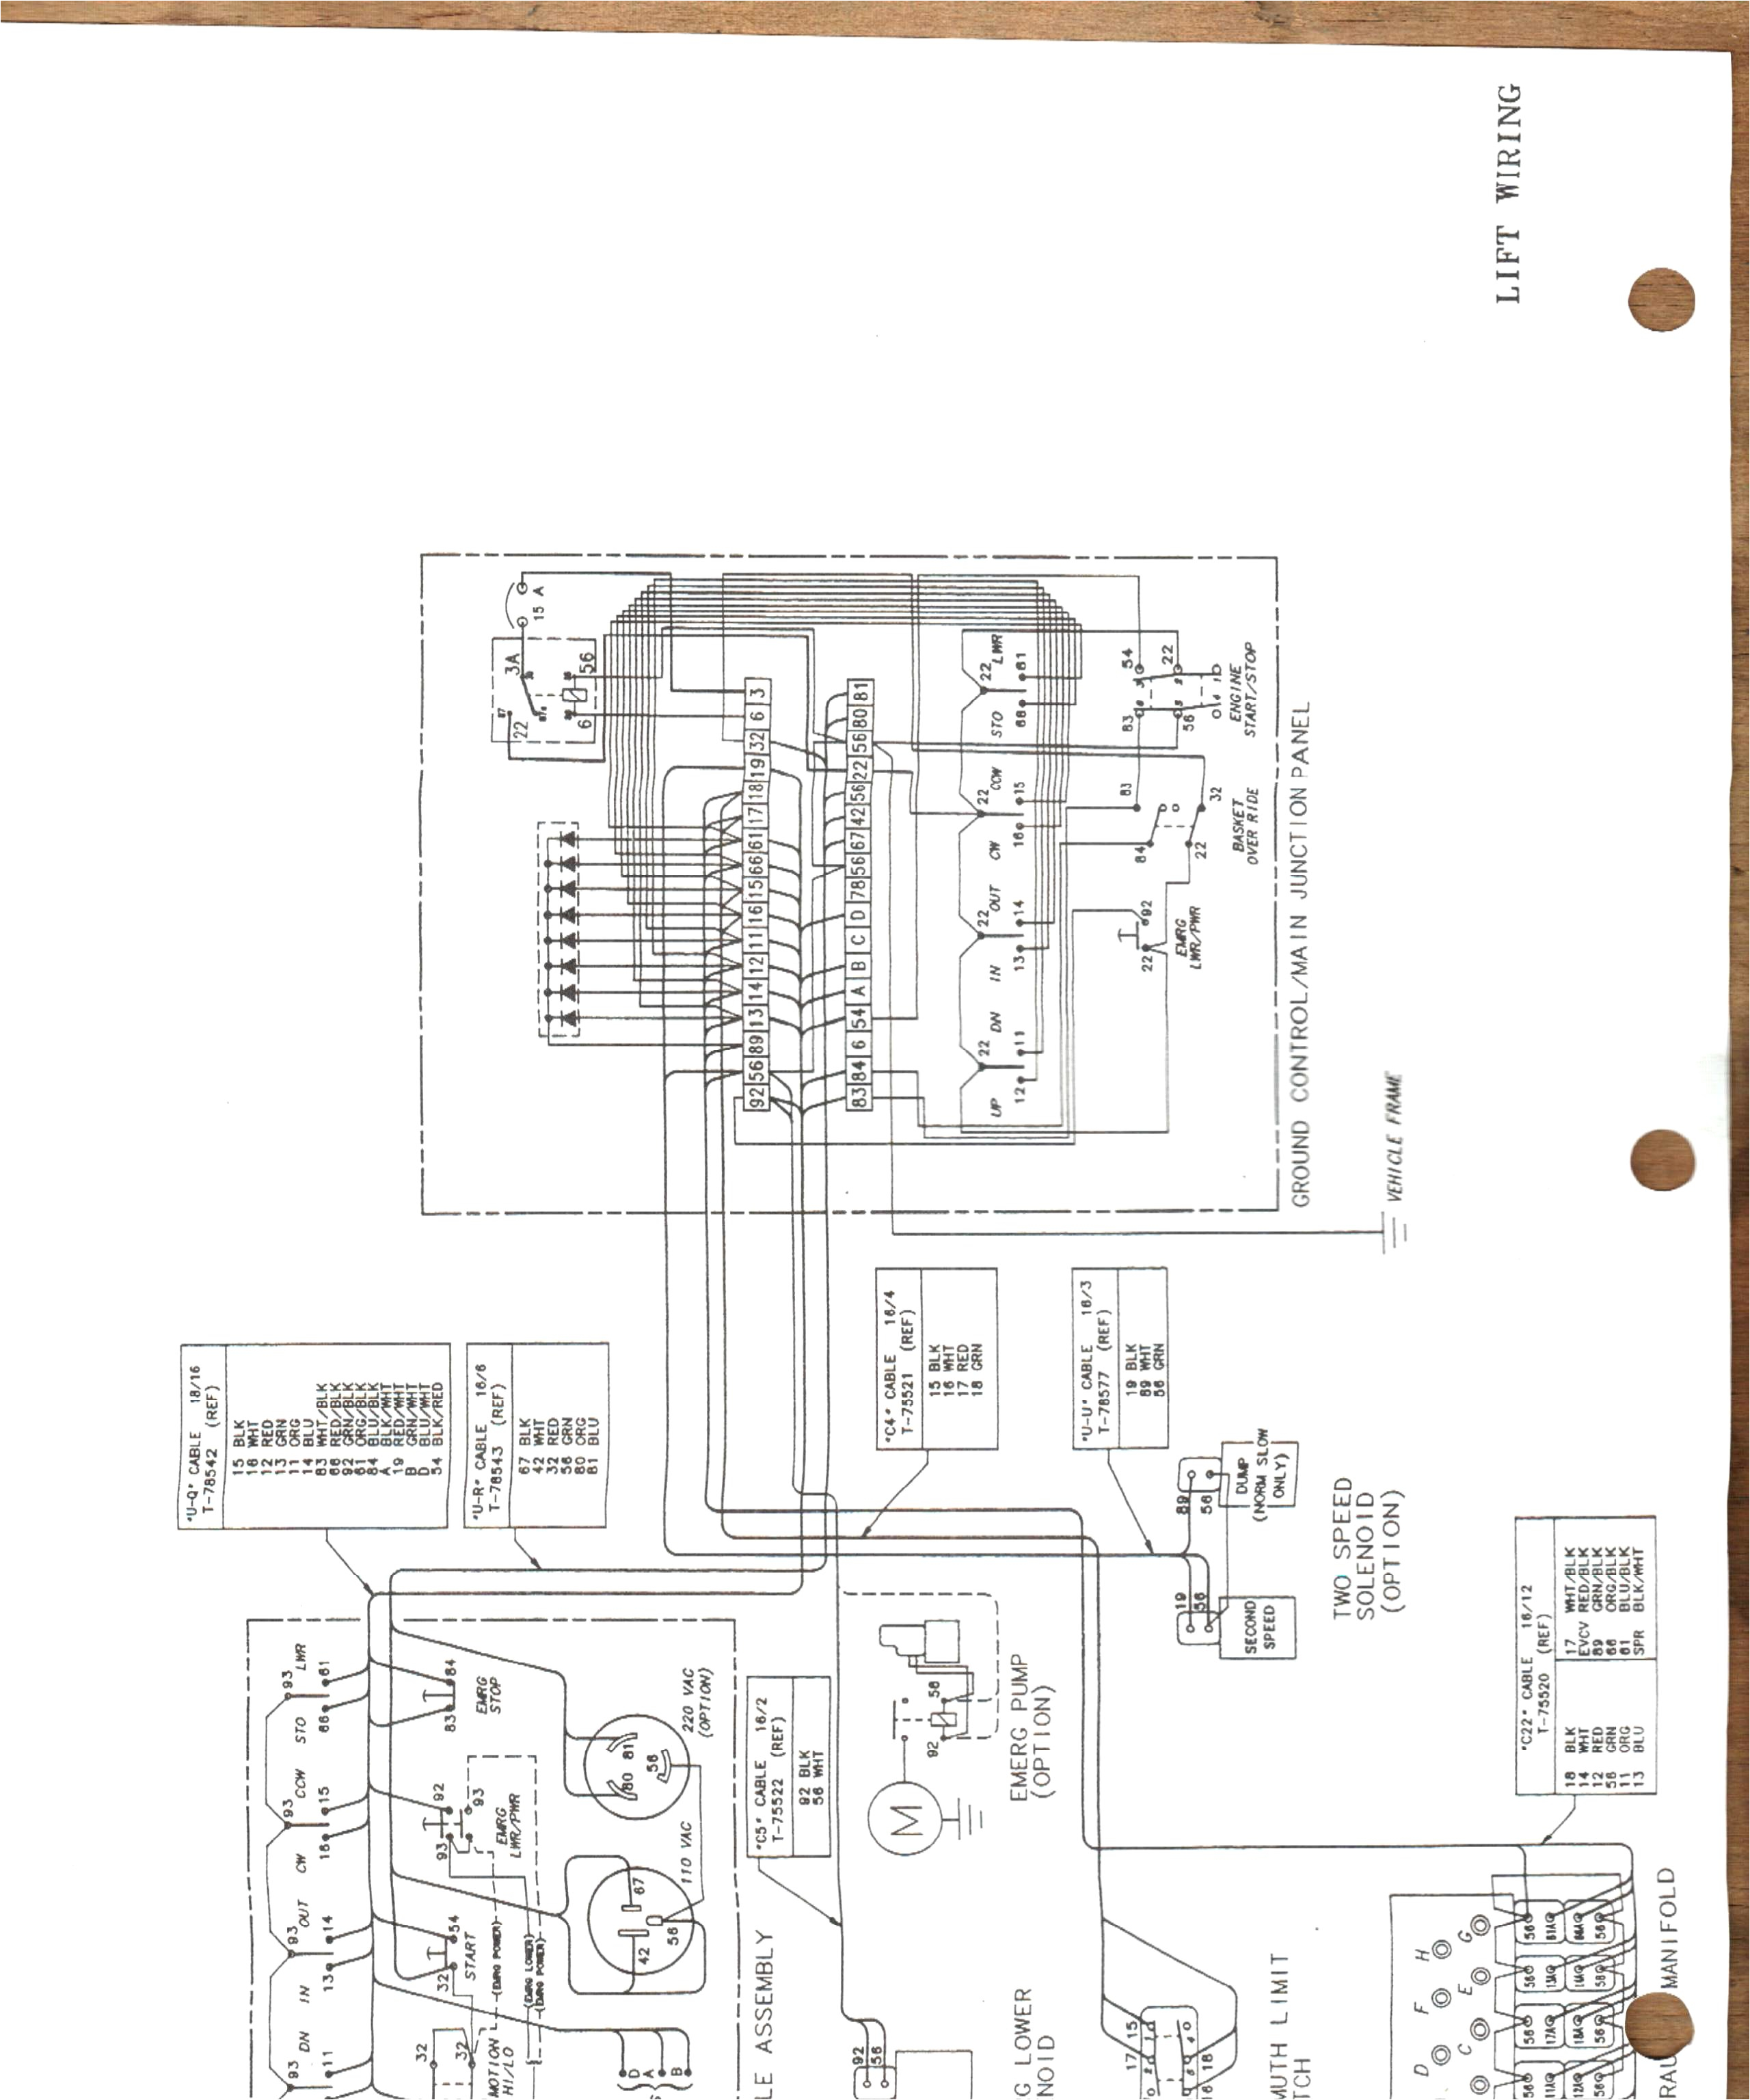 harlo wiring diagram wiring diagram centreversalift wiring diagrams wiring diagram databaseversalift bucket truck wiring diagram gallery